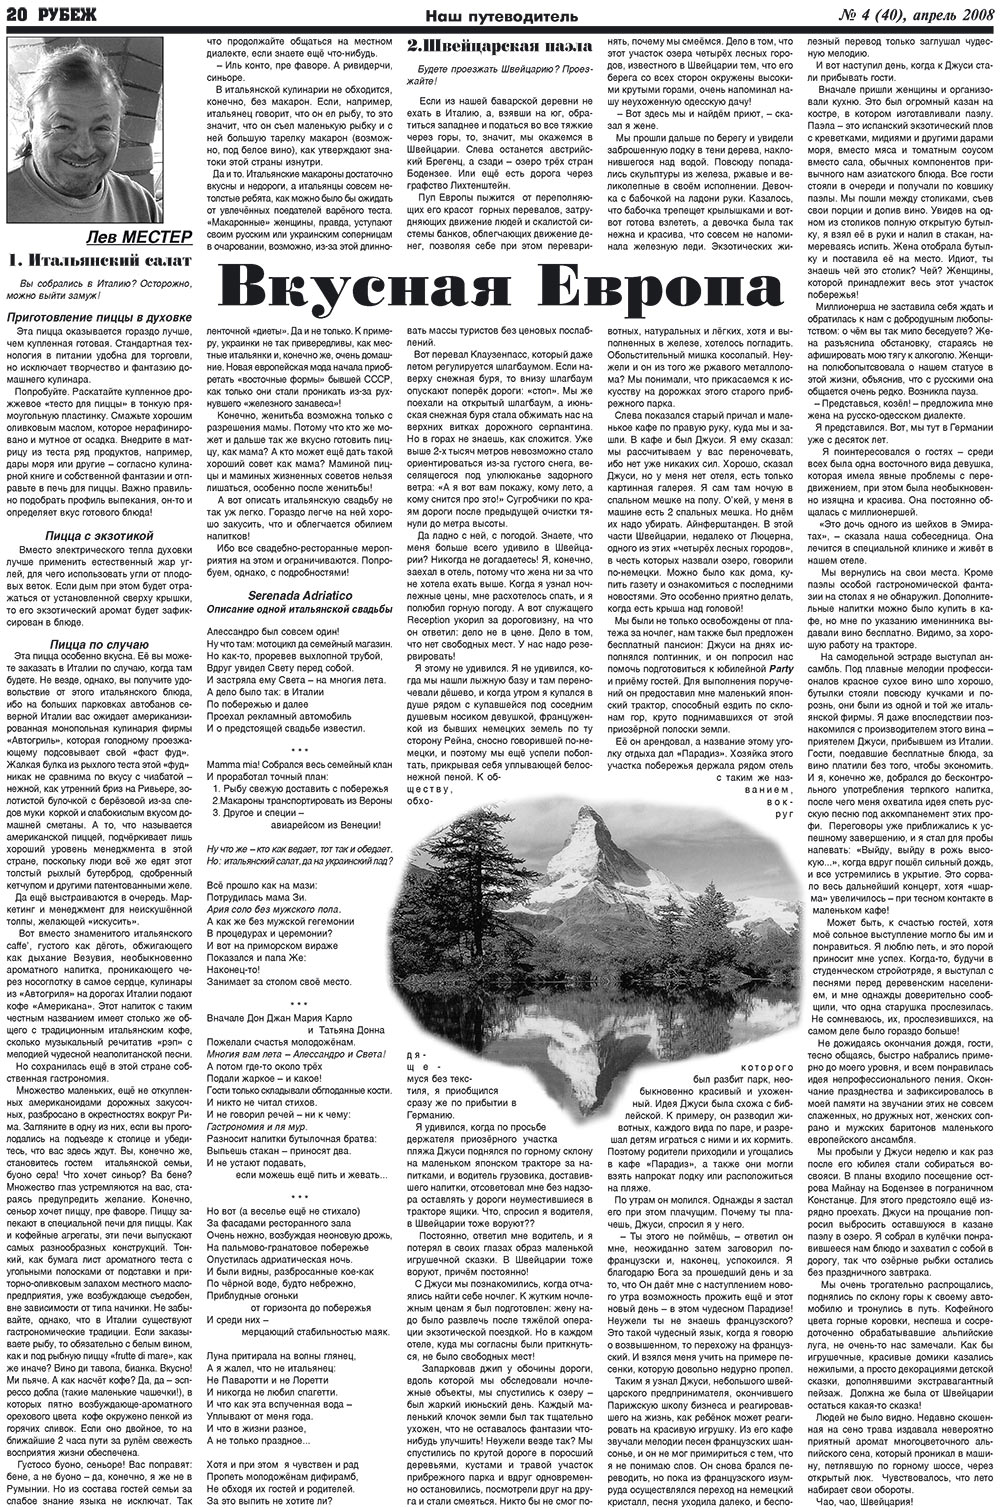 Рубеж (газета). 2008 год, номер 4, стр. 20